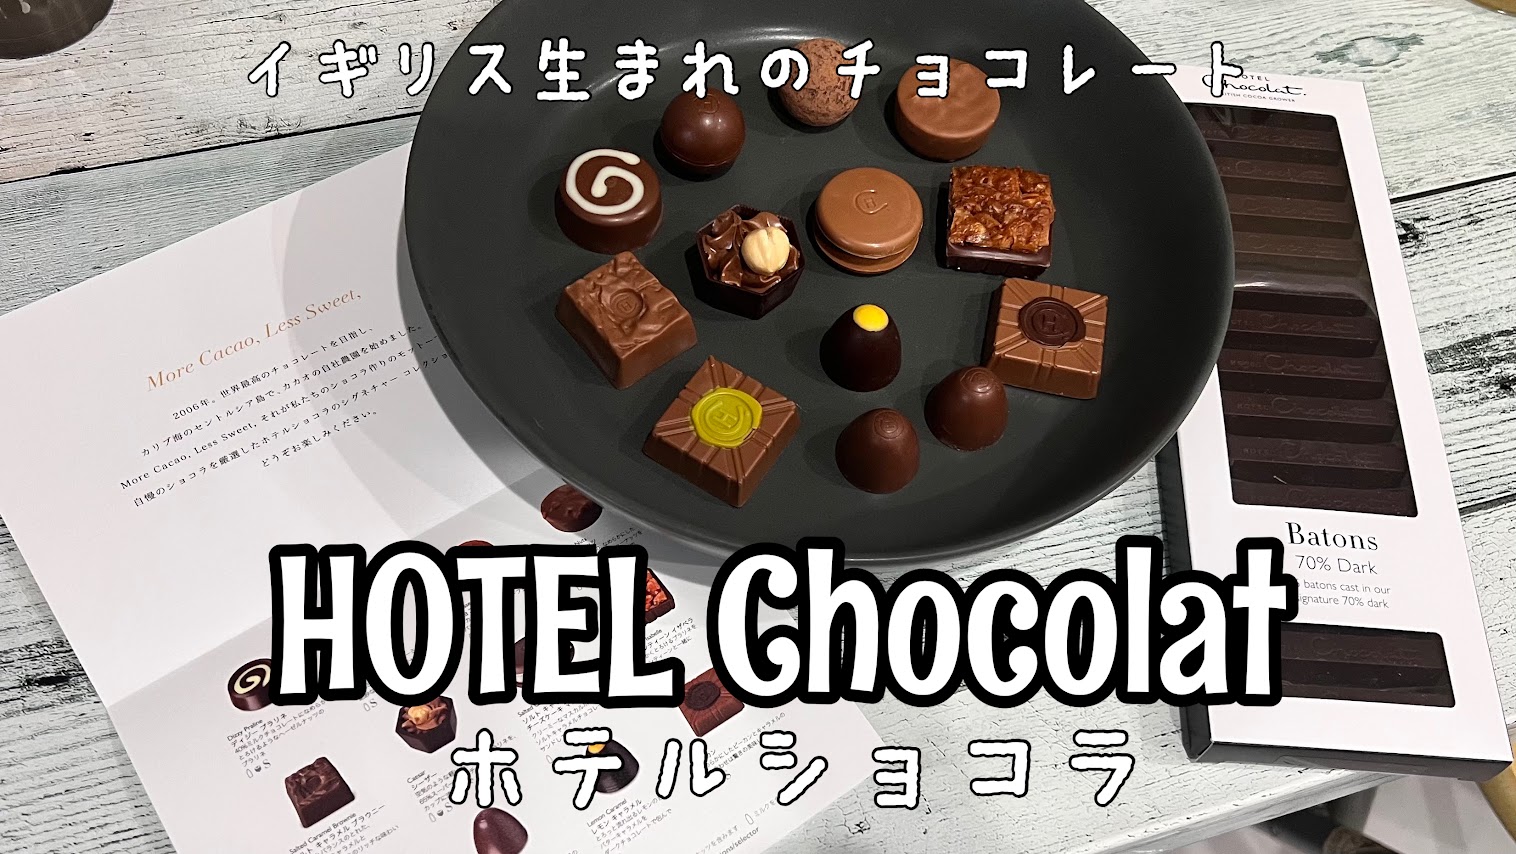 「チョコ好きがチョコ好きにおすすめしたいお店【HOTEL Chocolat】」のアイキャッチ画像